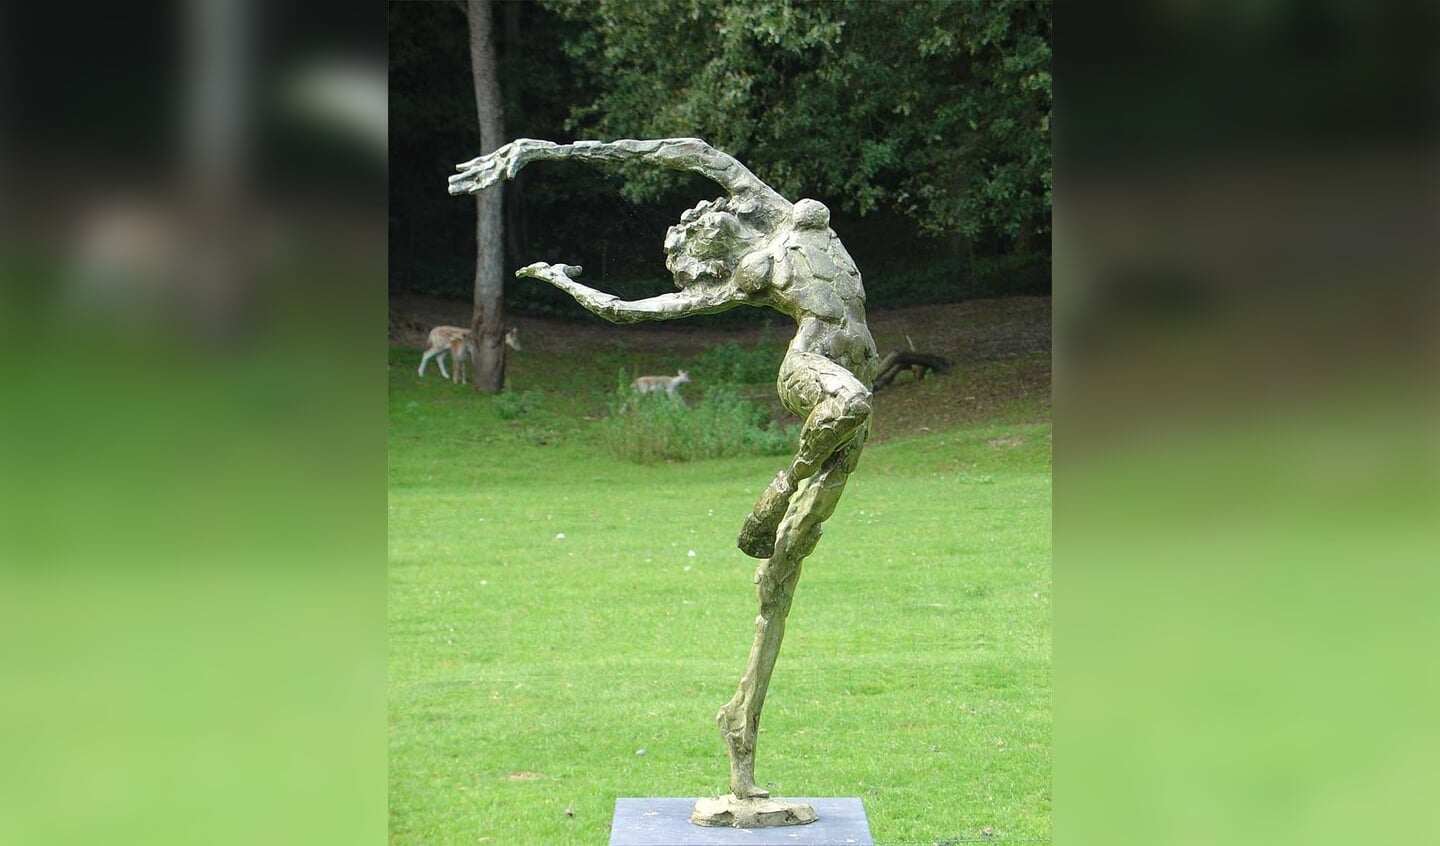 Het beeld De Vreugdedans van Kees Verkade dat werd gestolen uit de Hertenkamp.